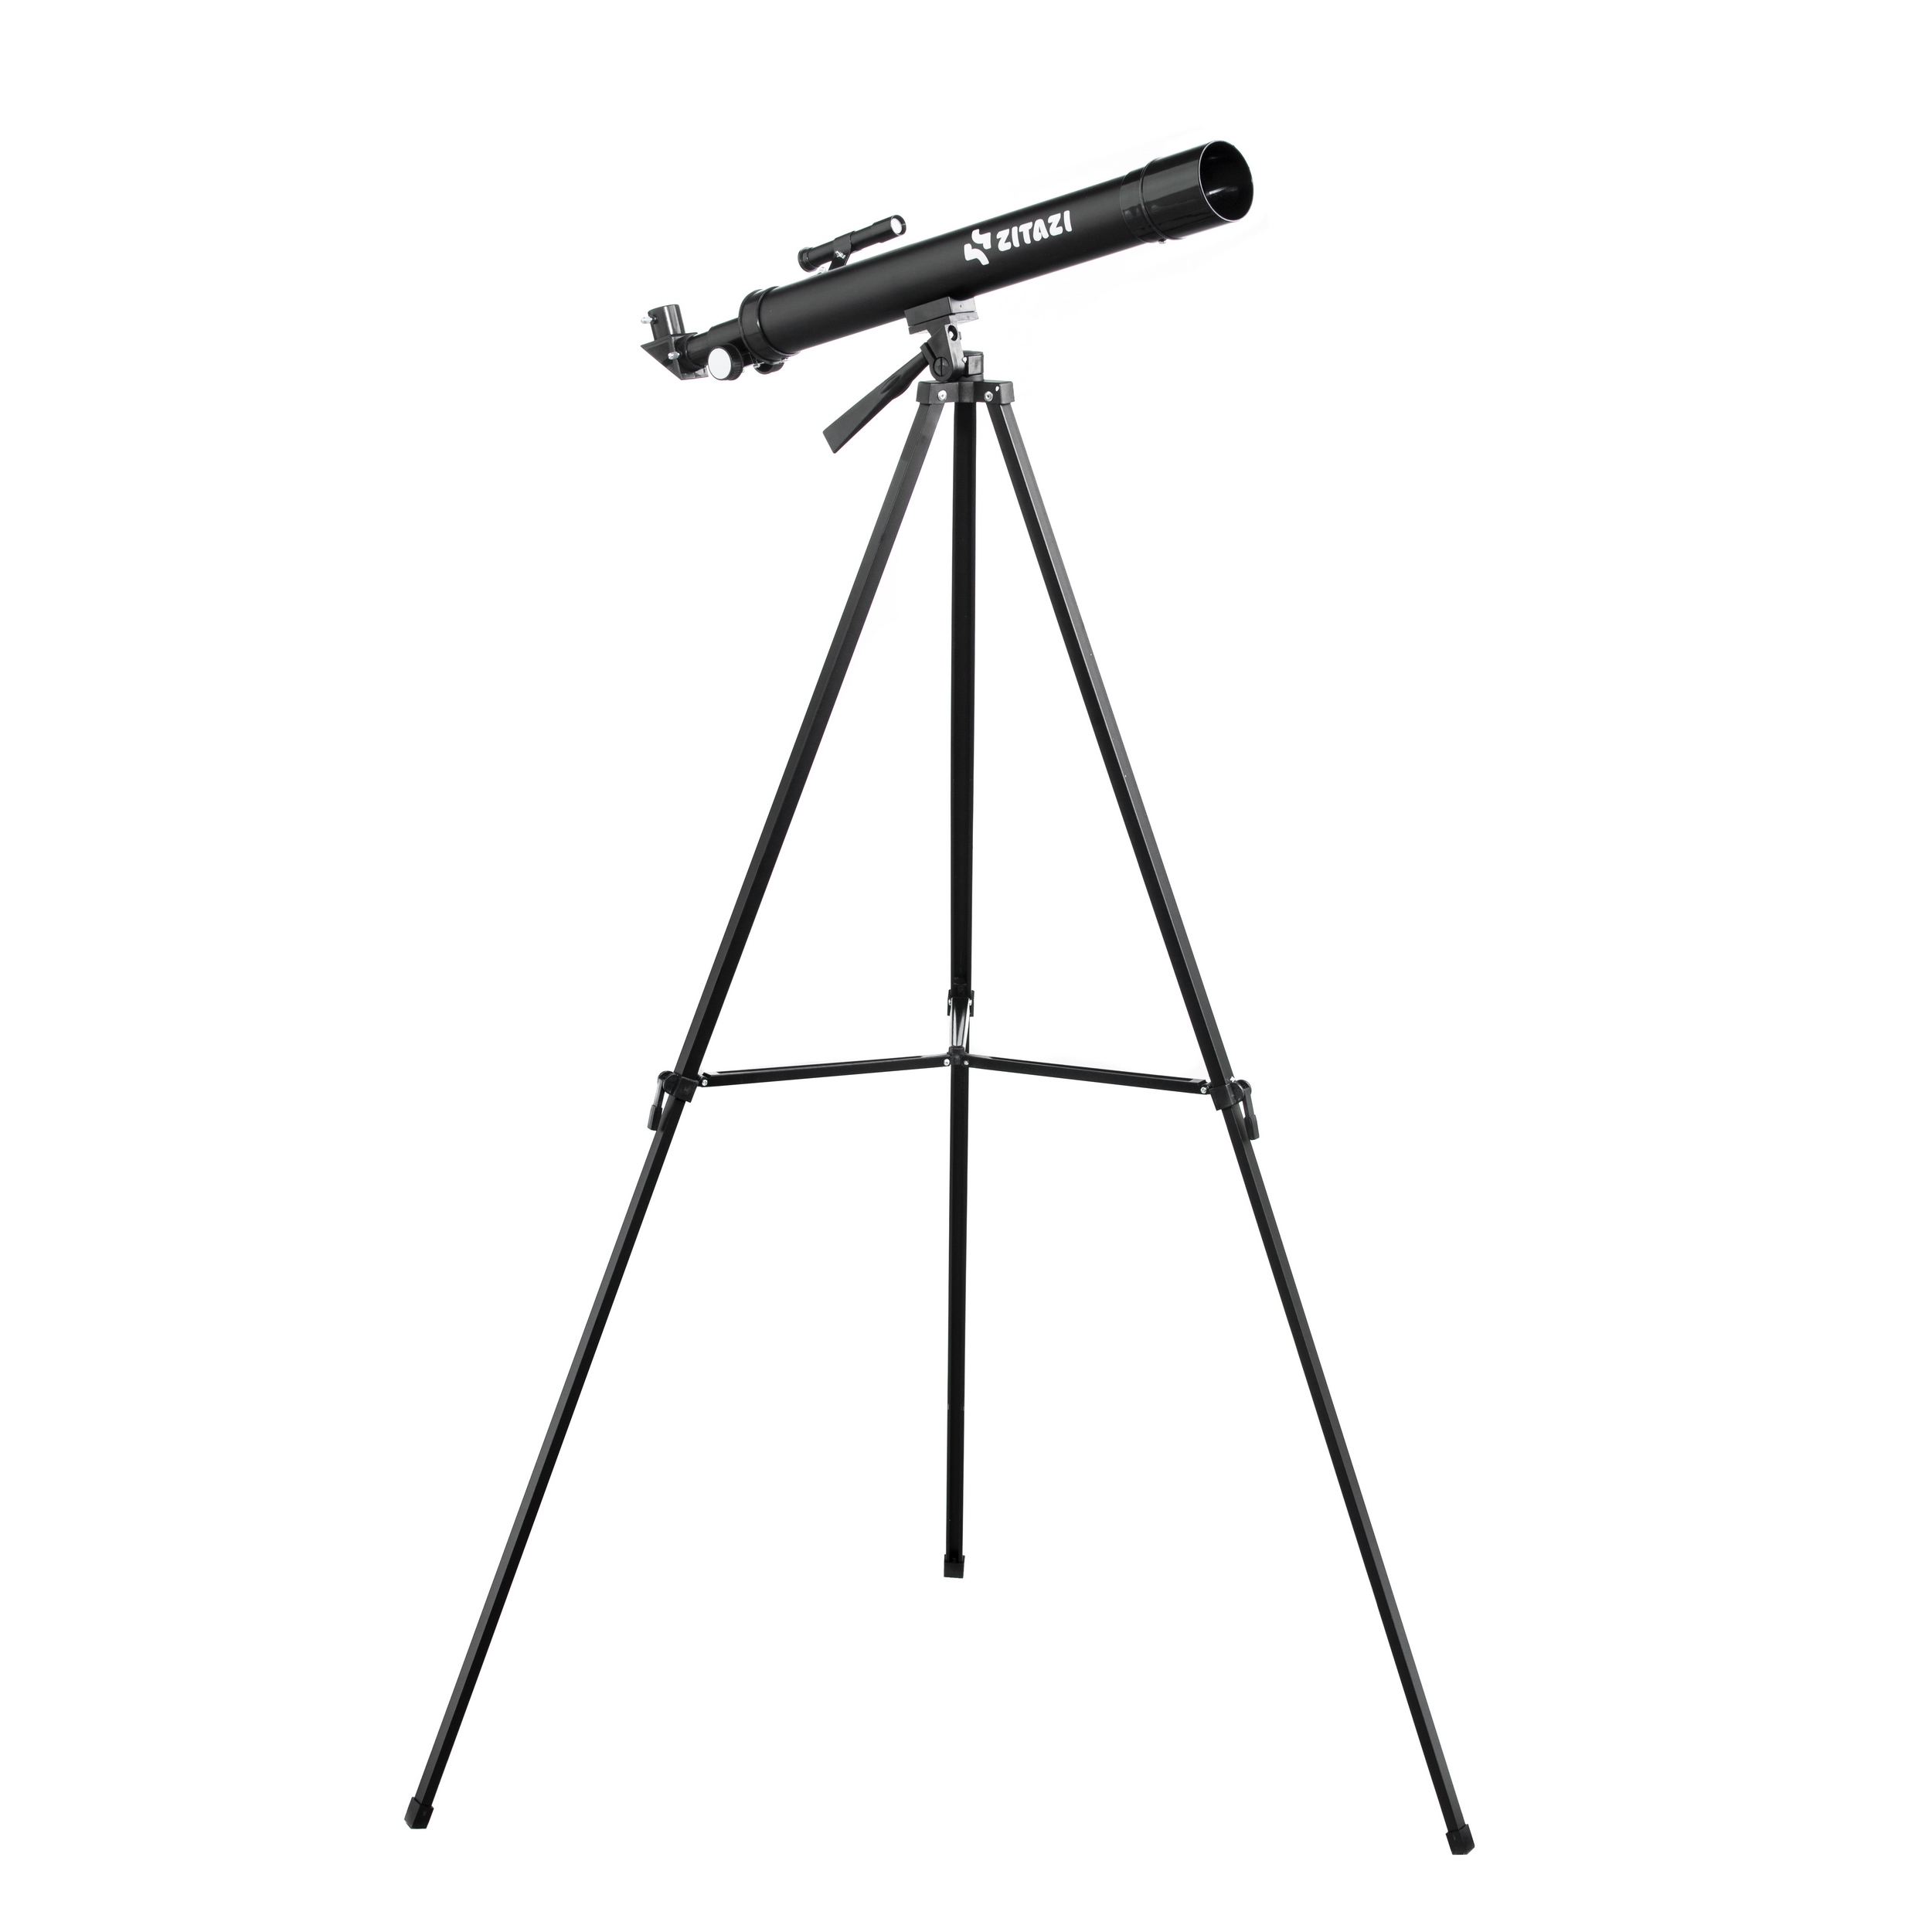 نقد و بررسی تلسکوپ زیتازی مدل F50600 توسط خریداران